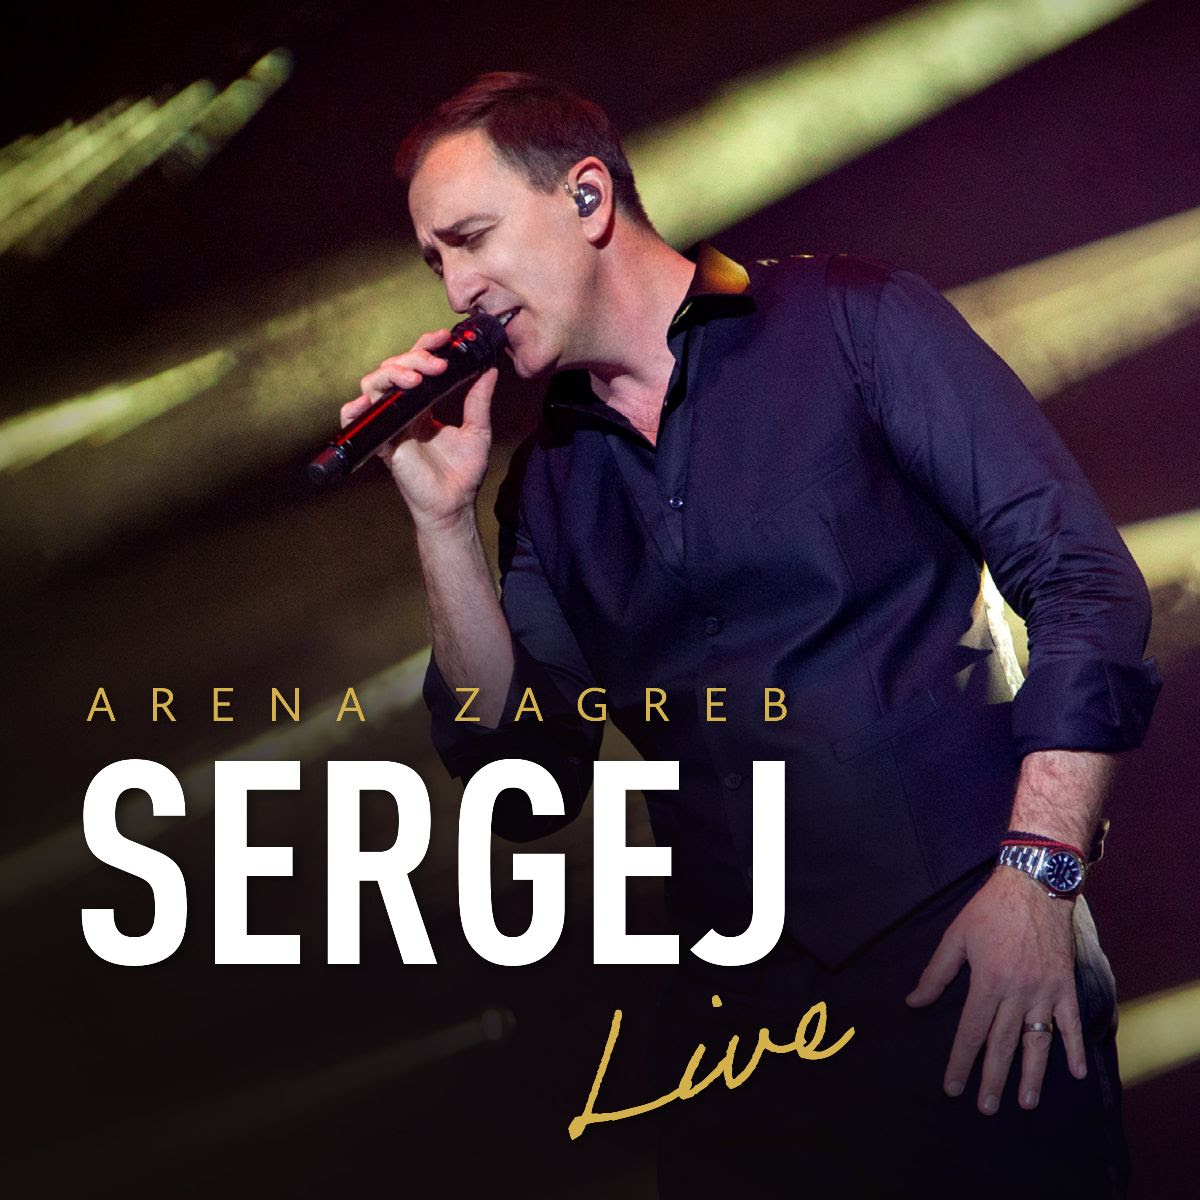 Ovog Valentinova premijerno prikazujemo snimku koncerta „Arena Zagreb Live“ Sergeja Ćetkovića